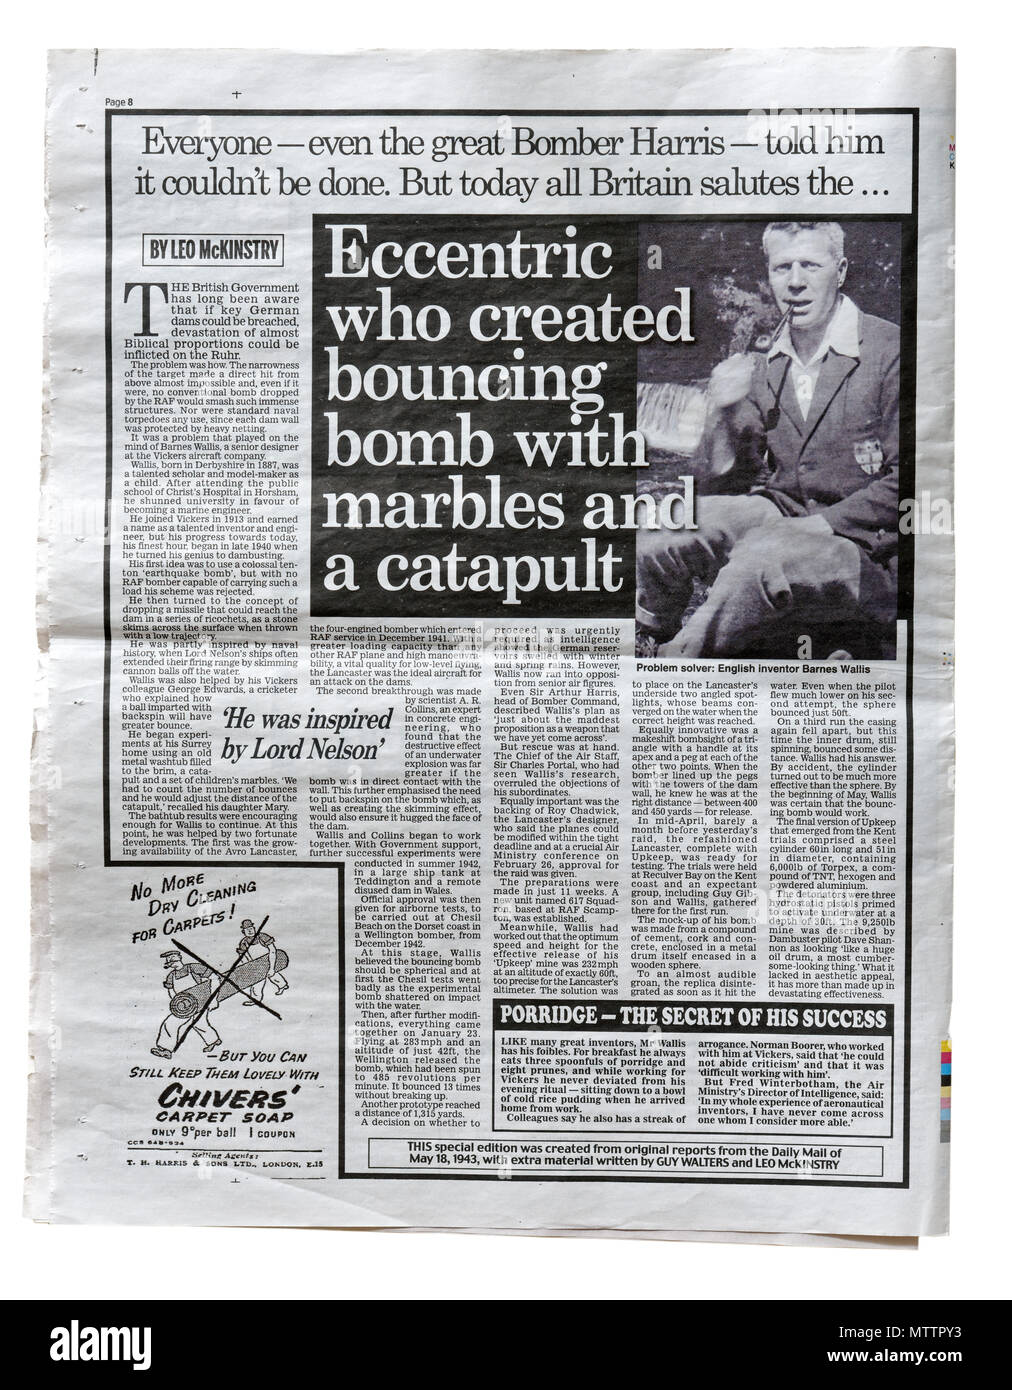 Una reproducción del Daily Mail del 18 de mayo de 1943 con un artículo sobre Barnes Wallis, inventor de la bomba de rebote Foto de stock